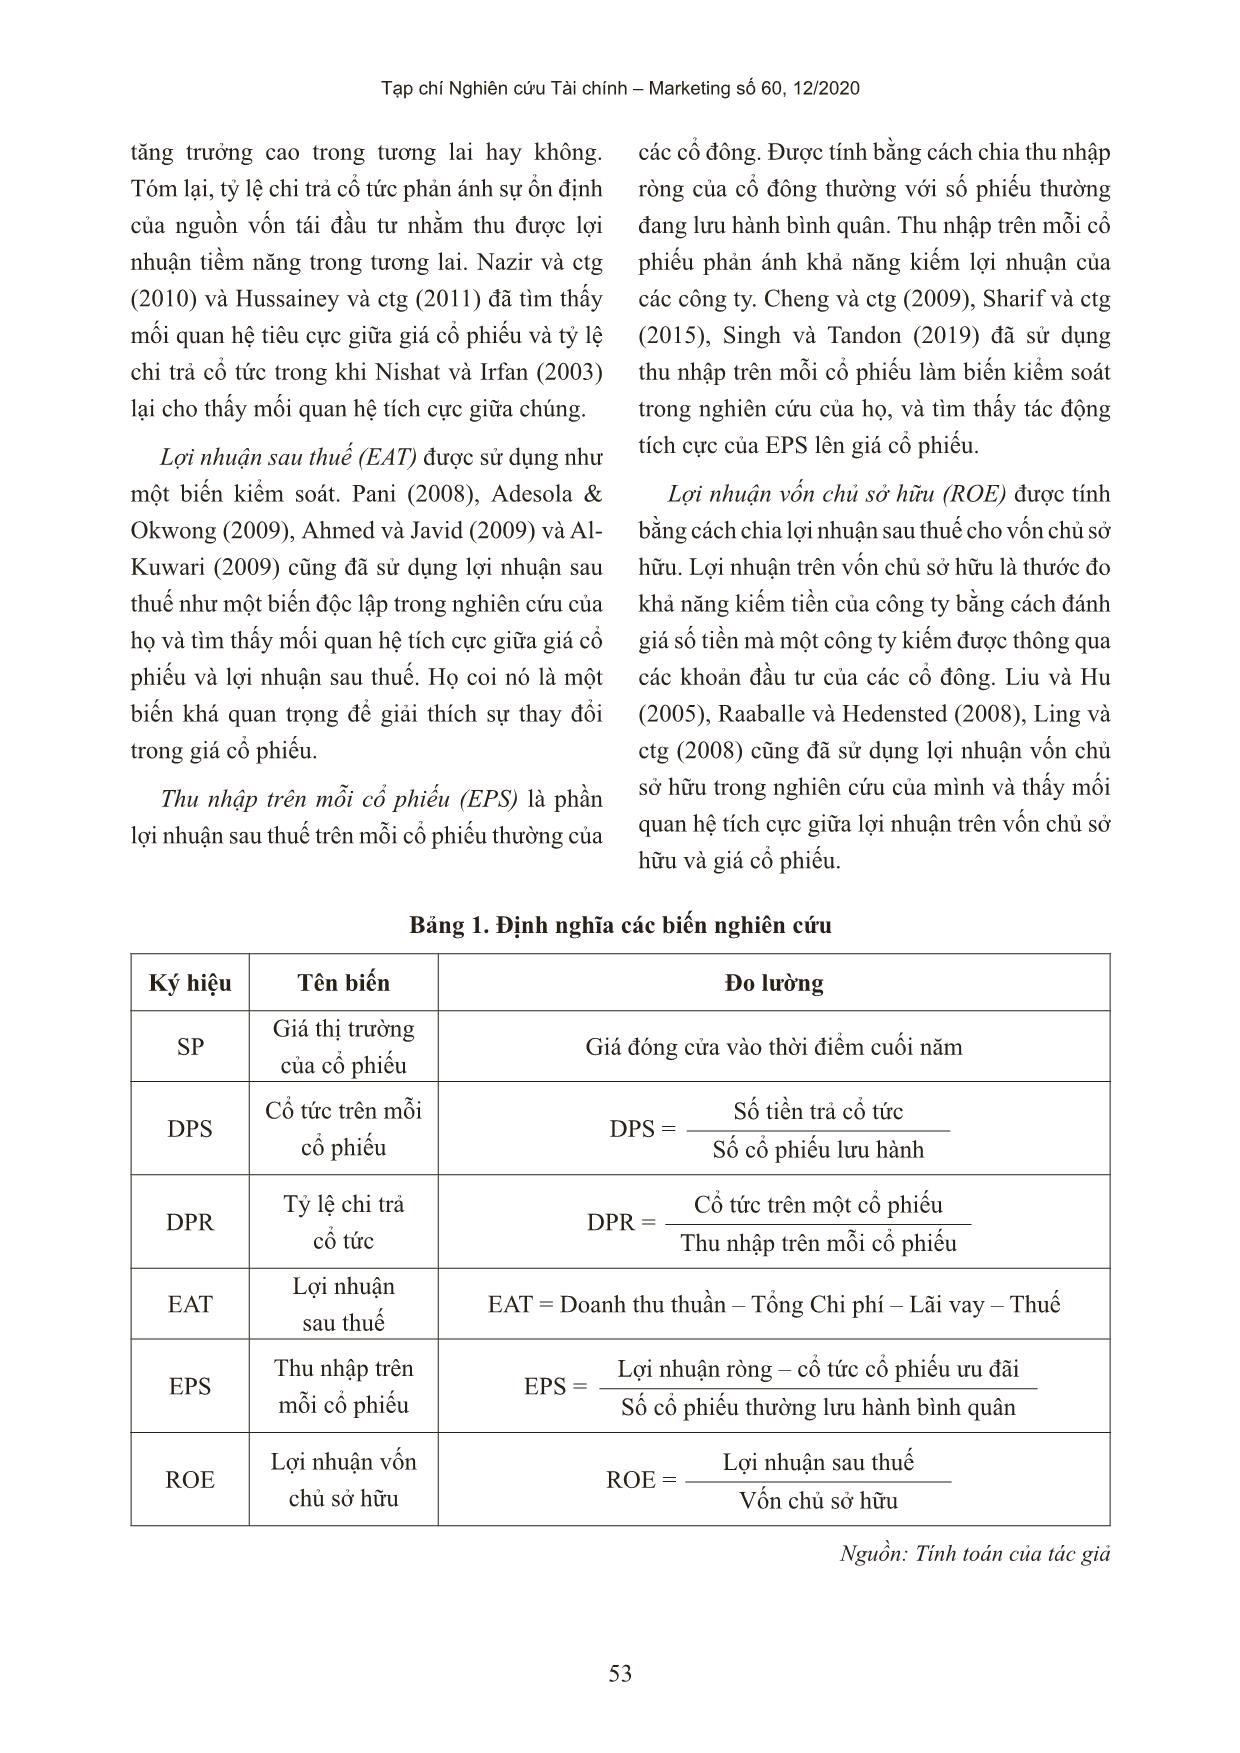 Ảnh hưởng của chính sách cổ tức đến giá cổ phiếu của các công ty niêm yết trên thị trường chứng khoán Việt Nam trang 8